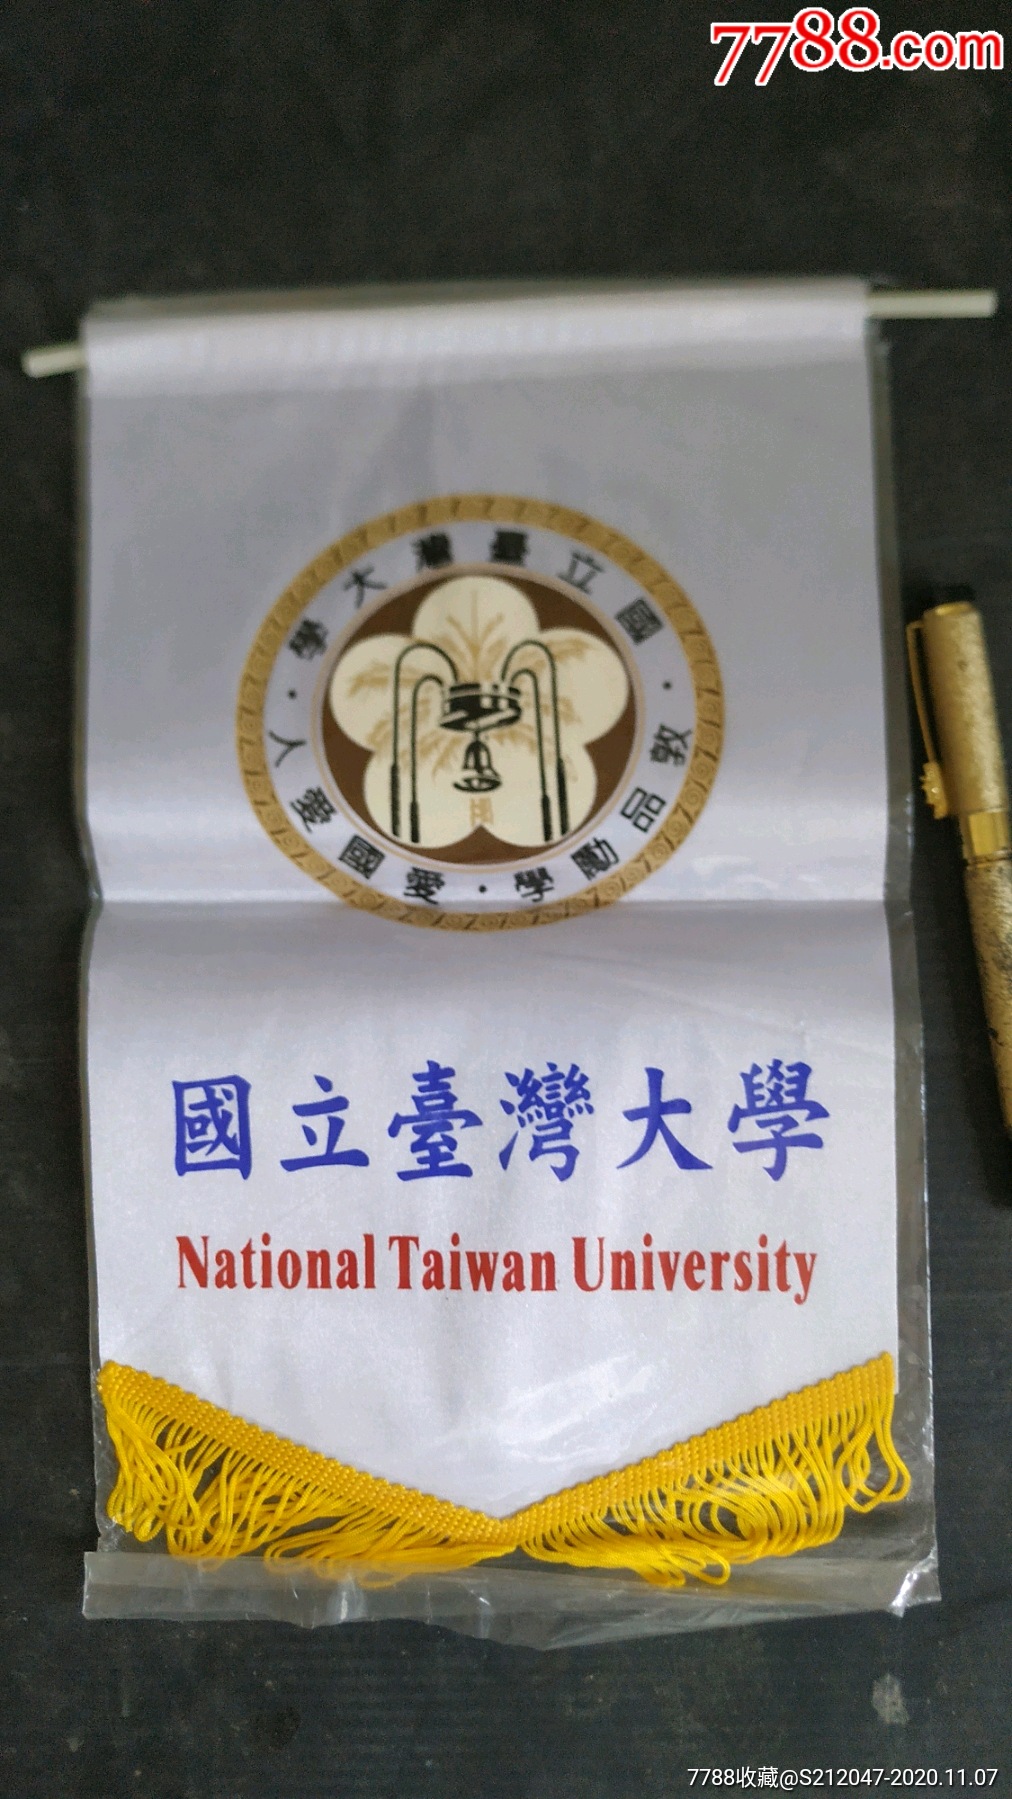 台湾大学纪念品(尺寸见参照物)